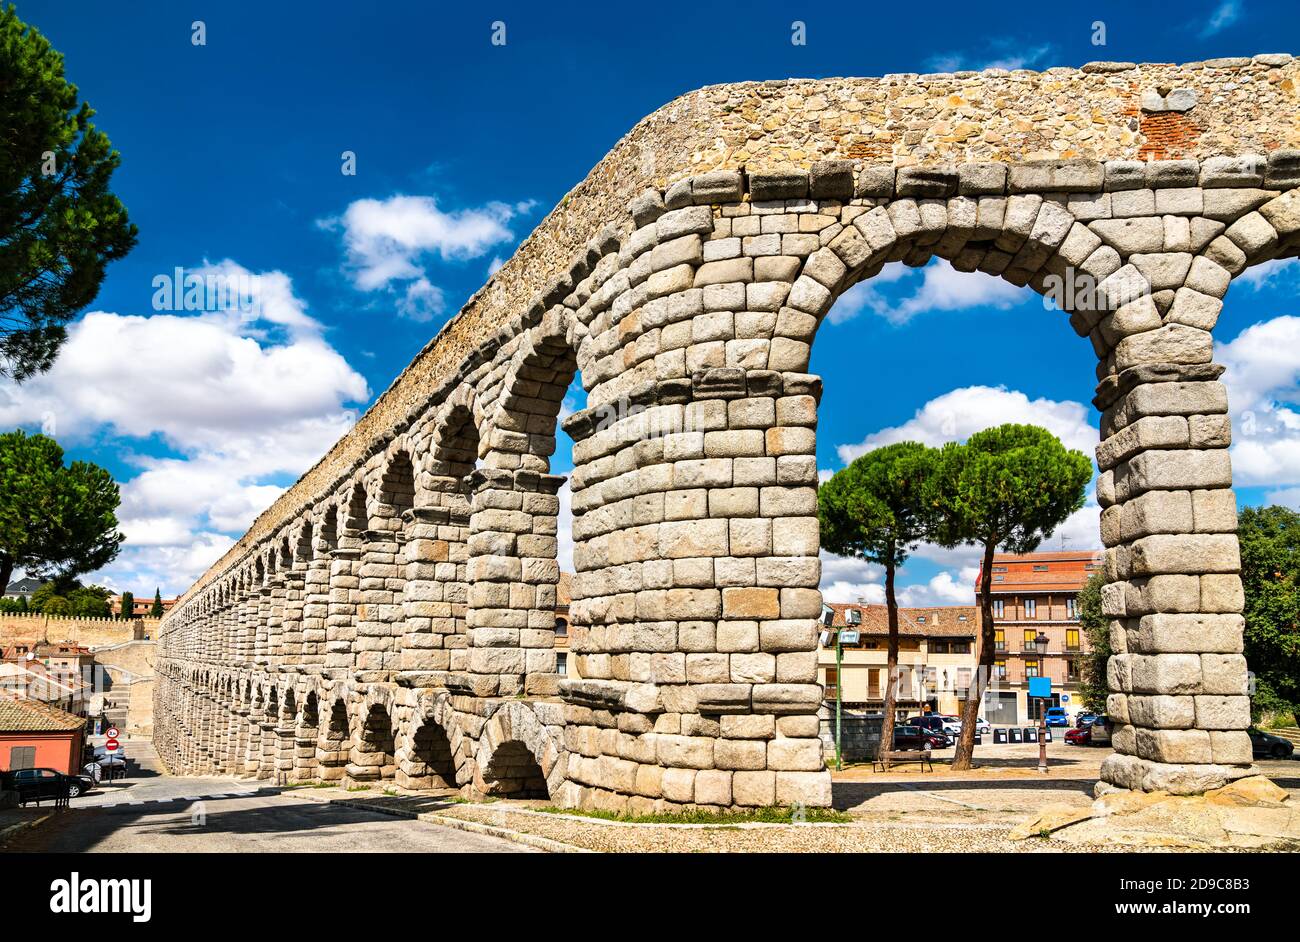 Ancient roman aqueduct in Segovia, Spain Stock Photo